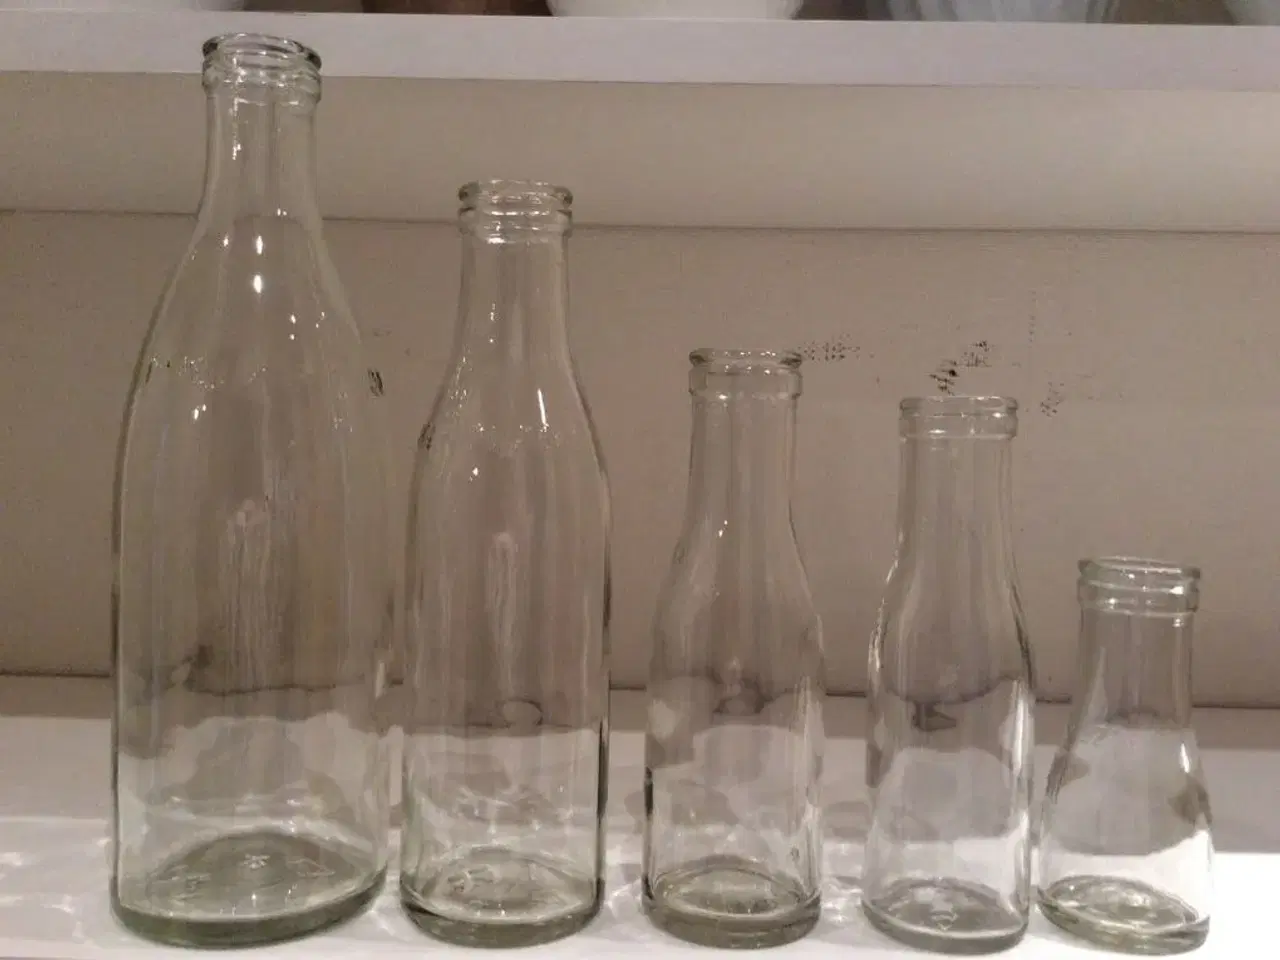 Billede 1 - Alle 5 mælkeflasker